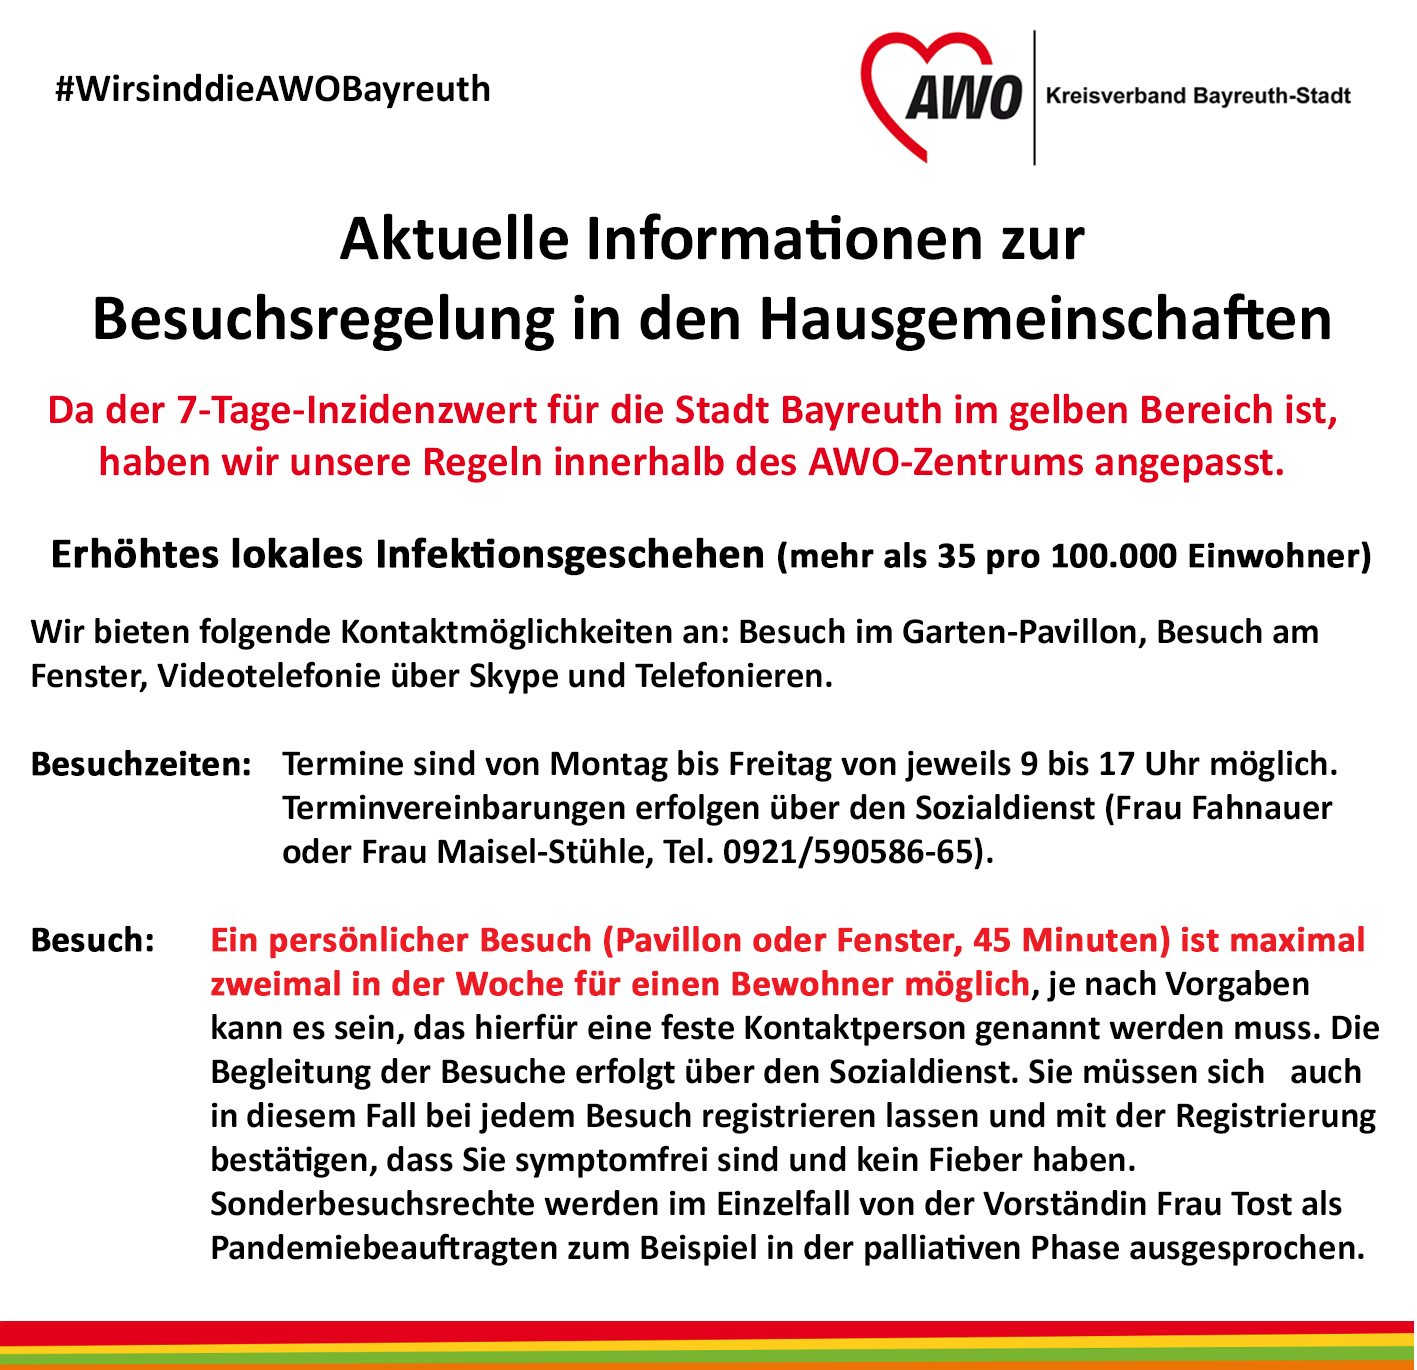 Aktuelle Information: Angepasste Besuchsregelungen aufgrund des hohen Inzidenzwertes in Bayreuth-Stadt